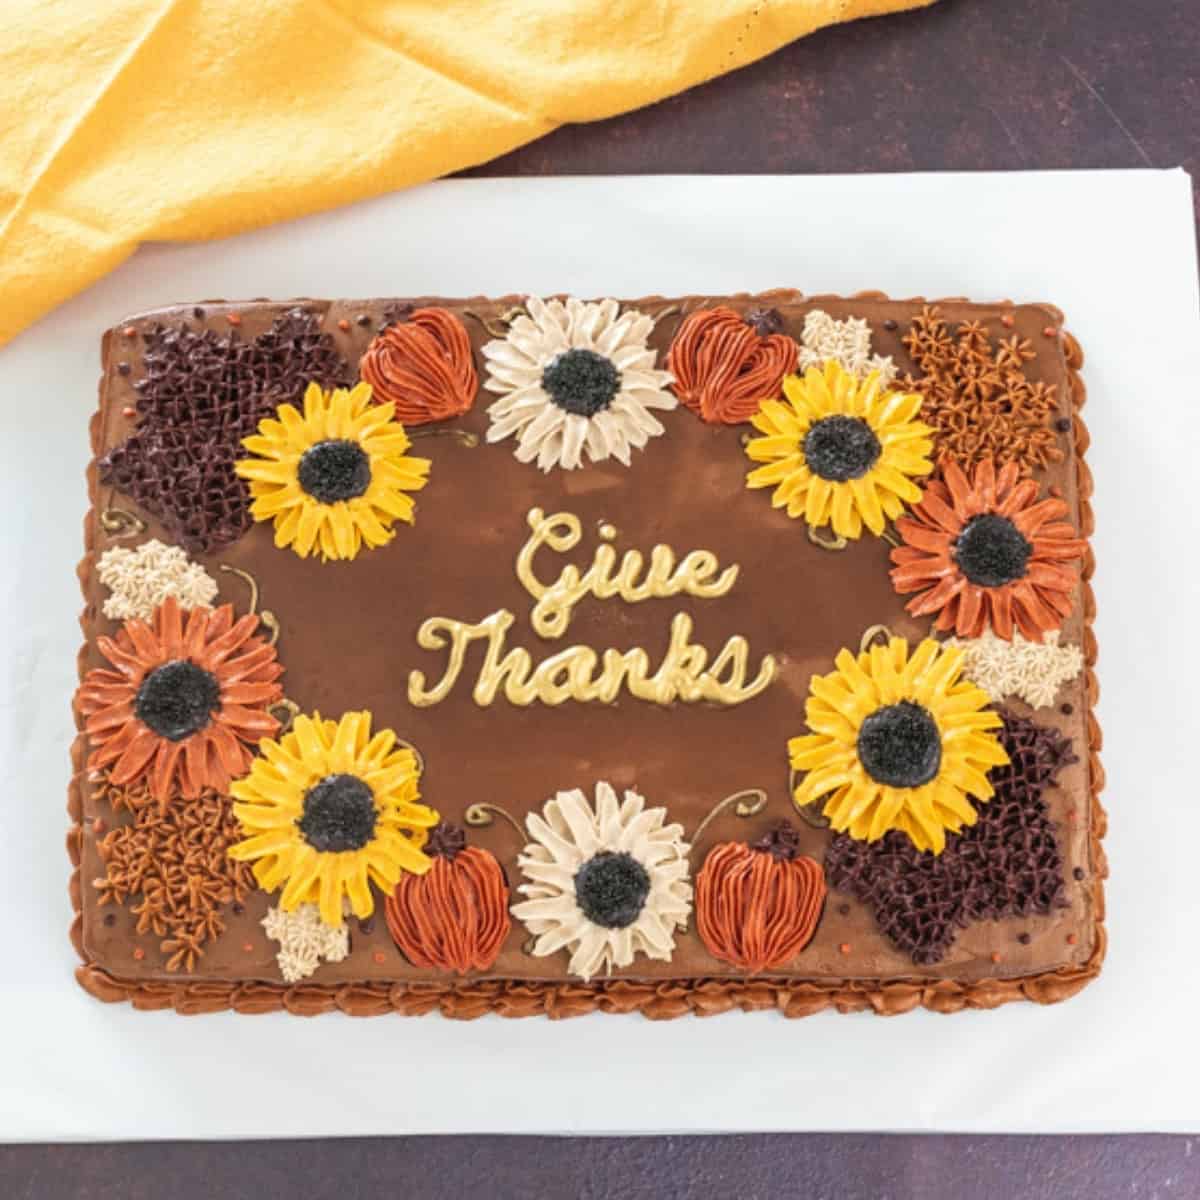 Give Thanks Thanksgiving Cake Tutorial - I Scream for Buttercream